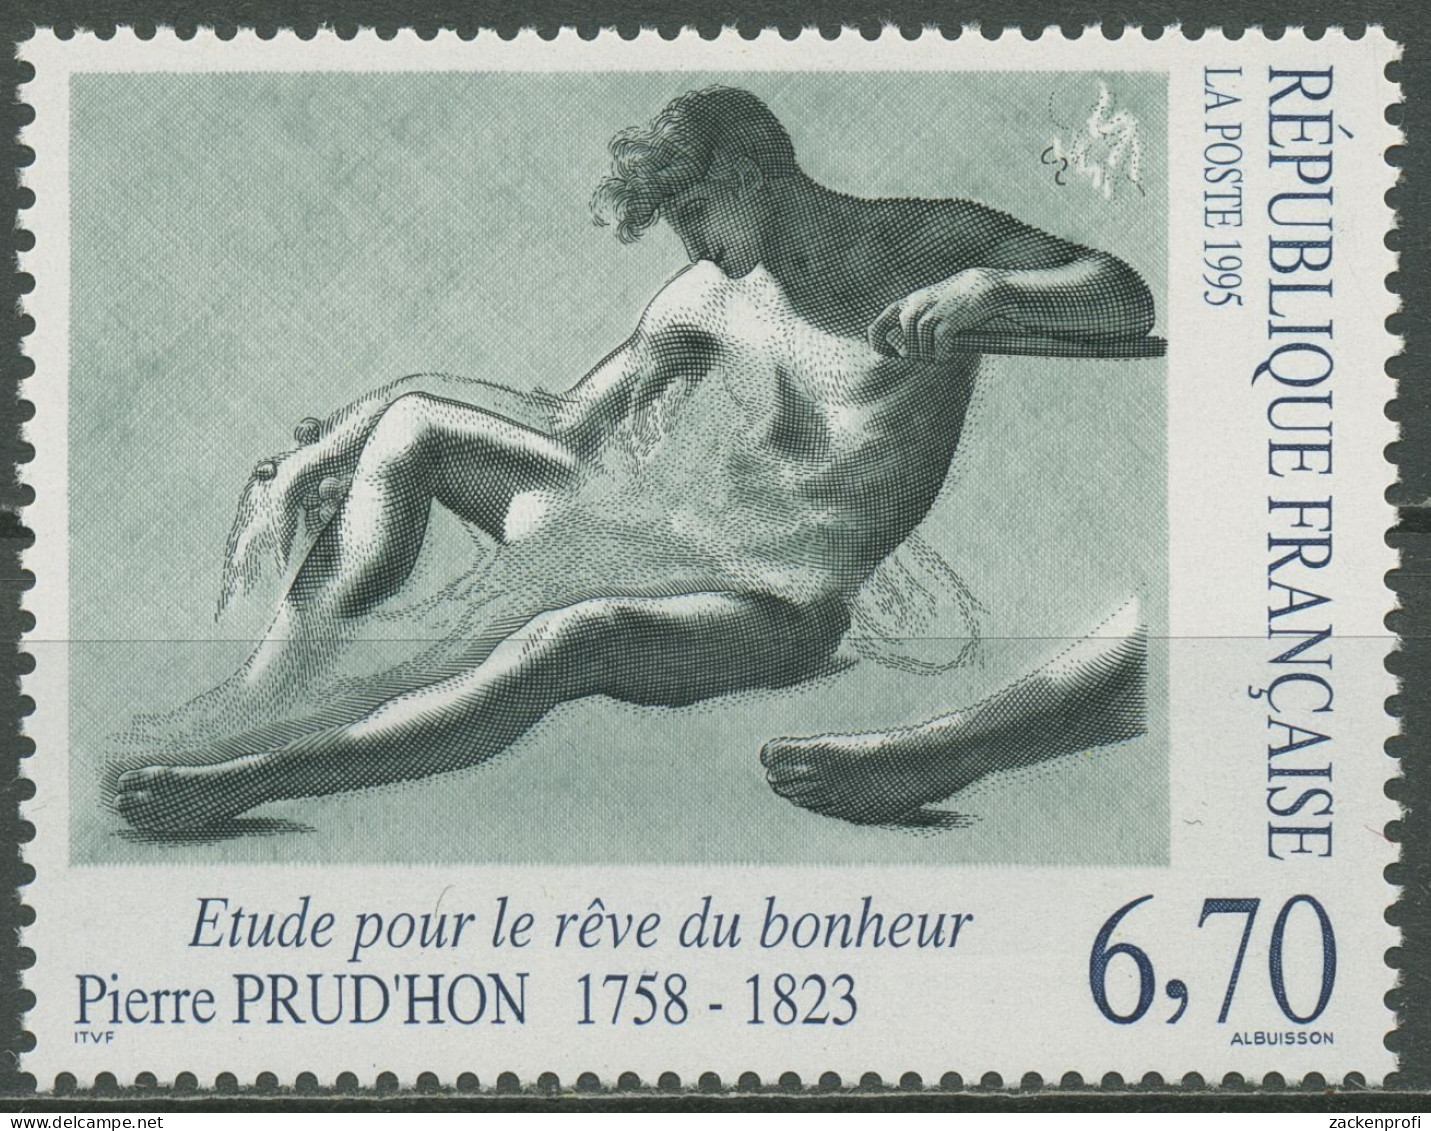 Frankreich 1995 Kunst Zeichnung Pierre-Paul Prud'hon 3088 Postfrisch - Ungebraucht